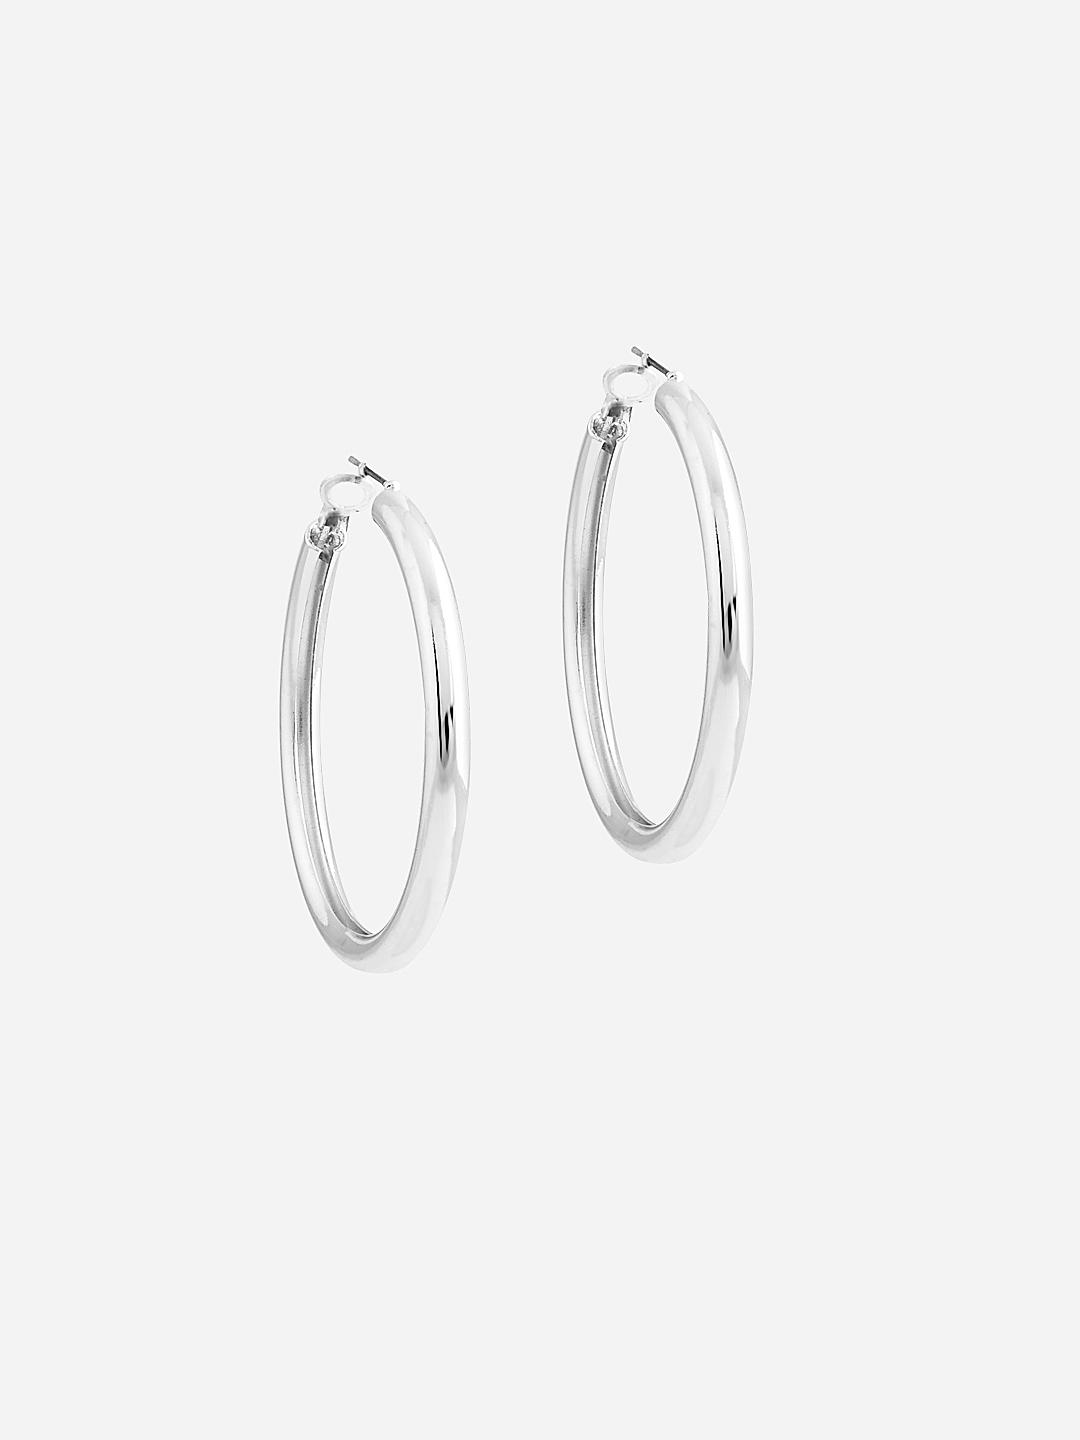 Macy's Diamond Hoop Earrings (1/10 ct. t.w.) in Sterling Silver - Macy's